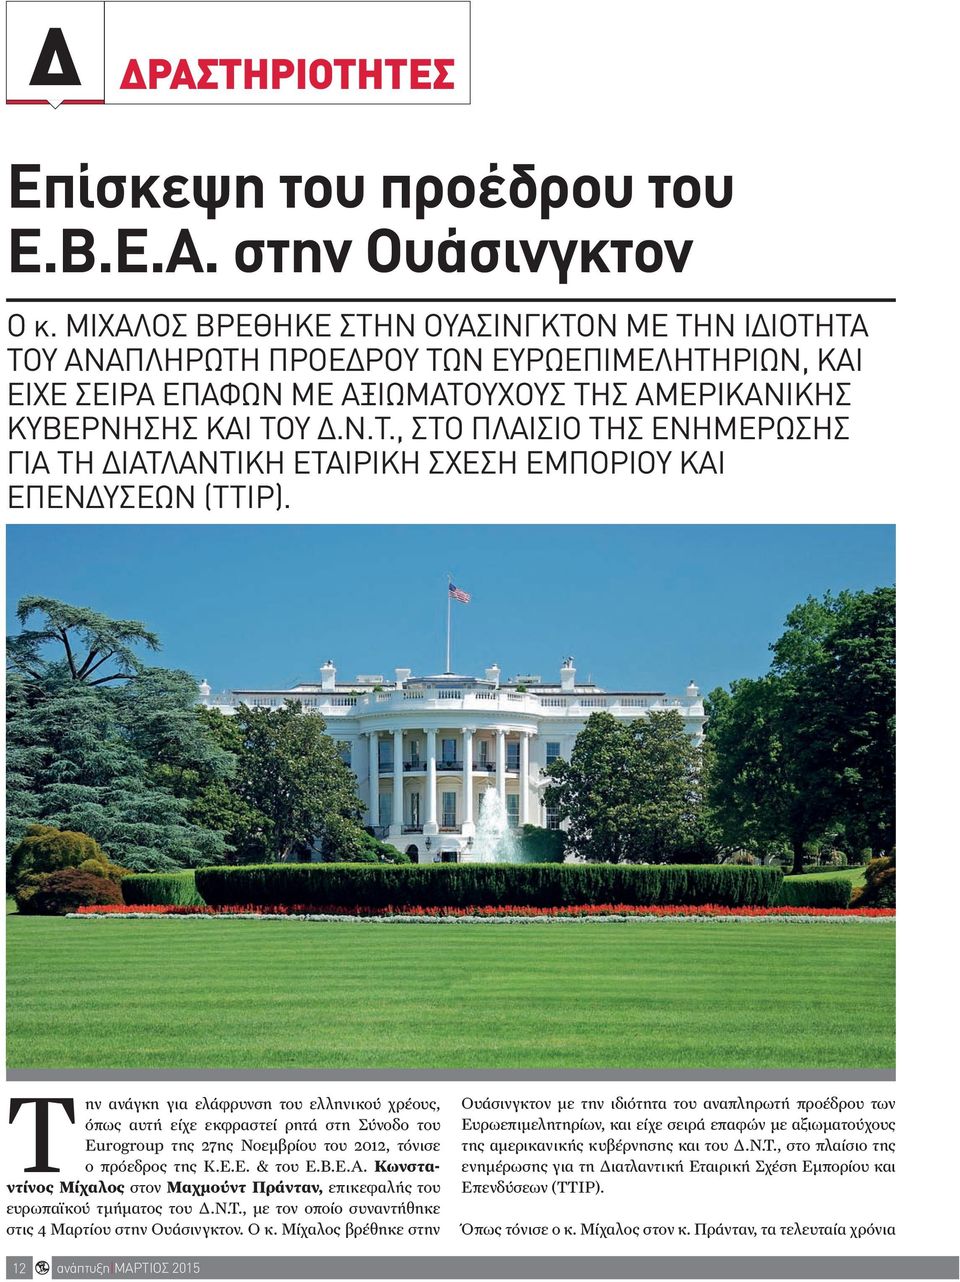 Την ανάγκη για ελάφρυνση του ελληνικού χρέους, όπως αυτή είχε εκφραστεί ρητά στη Σύνοδο του Eurogroup της 27ης Νοεμβρίου του 2012, τόνισε ο πρόεδρος της Κ.Ε.Ε. & του Ε.Β.Ε.Α.